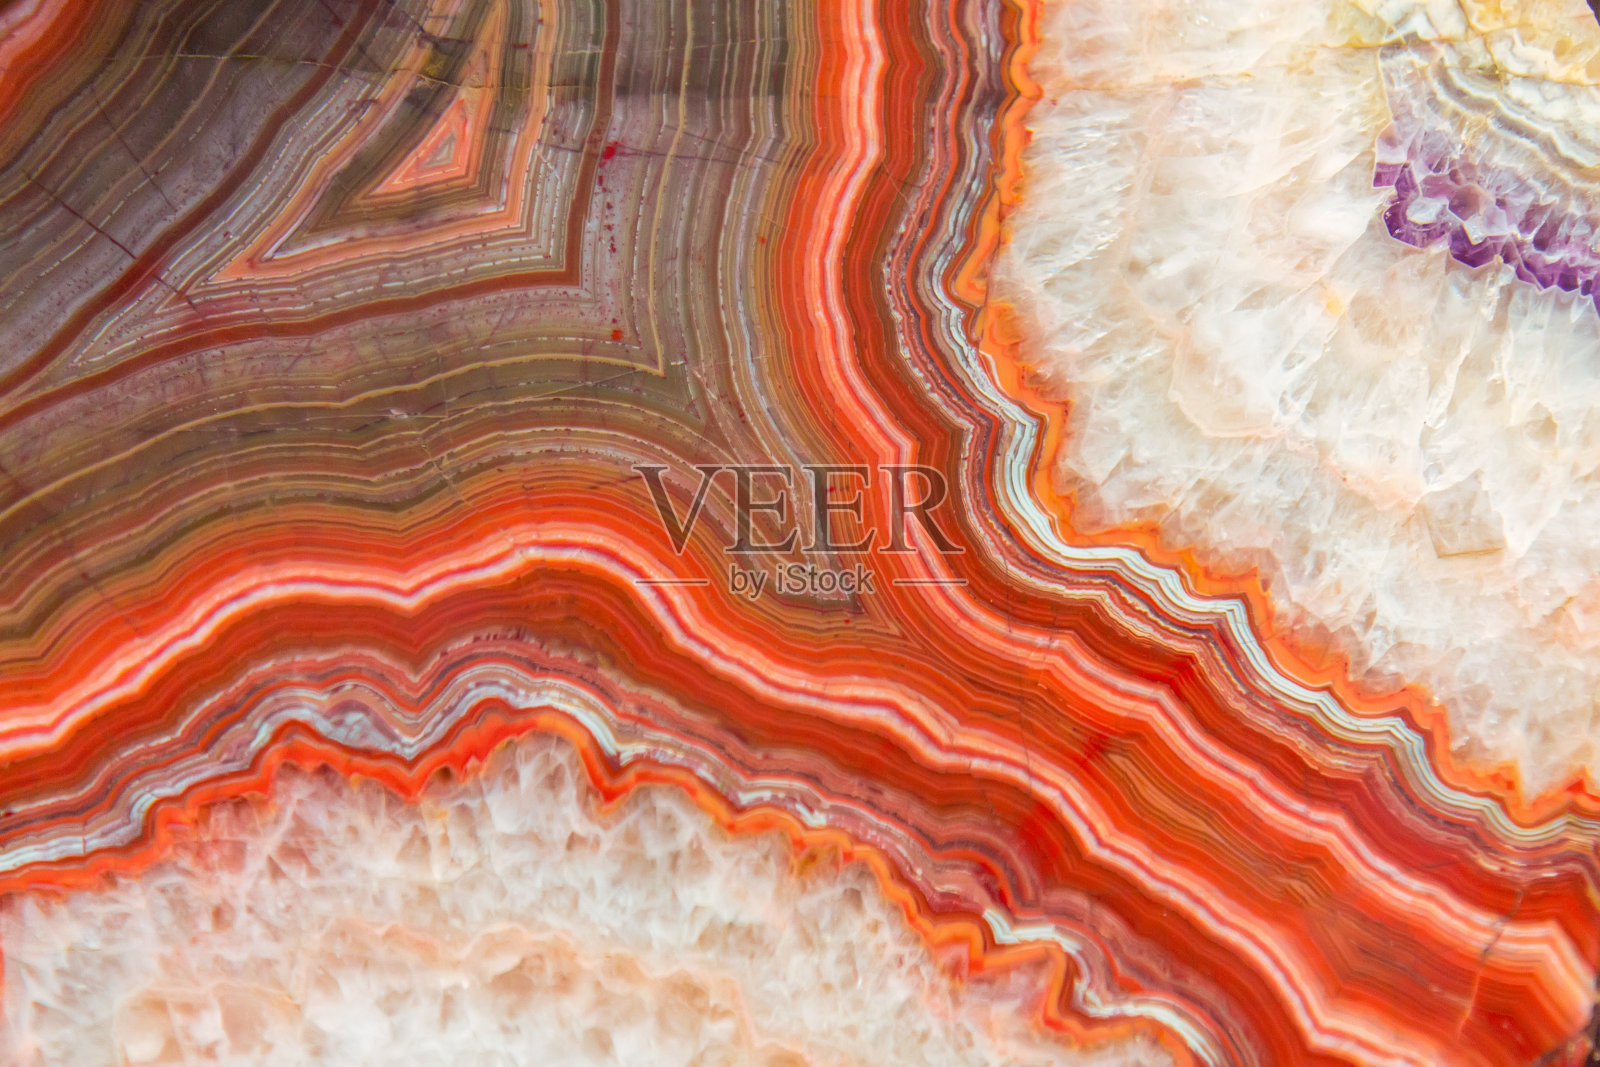 红玛瑙矿物背景图片素材